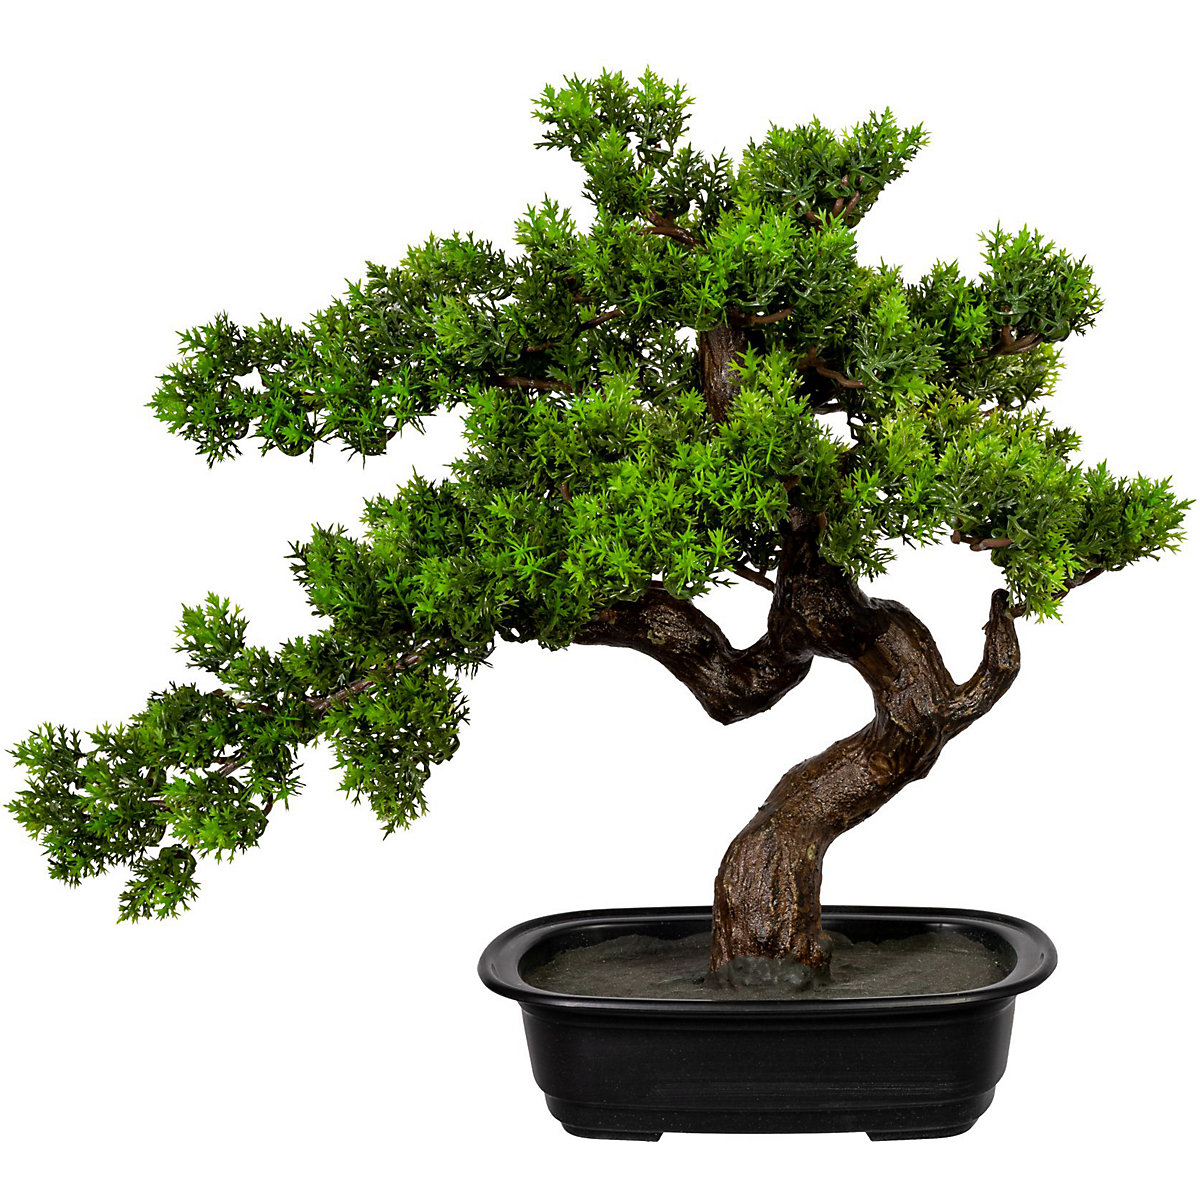 Mirt zwyczajny w formie bonsai